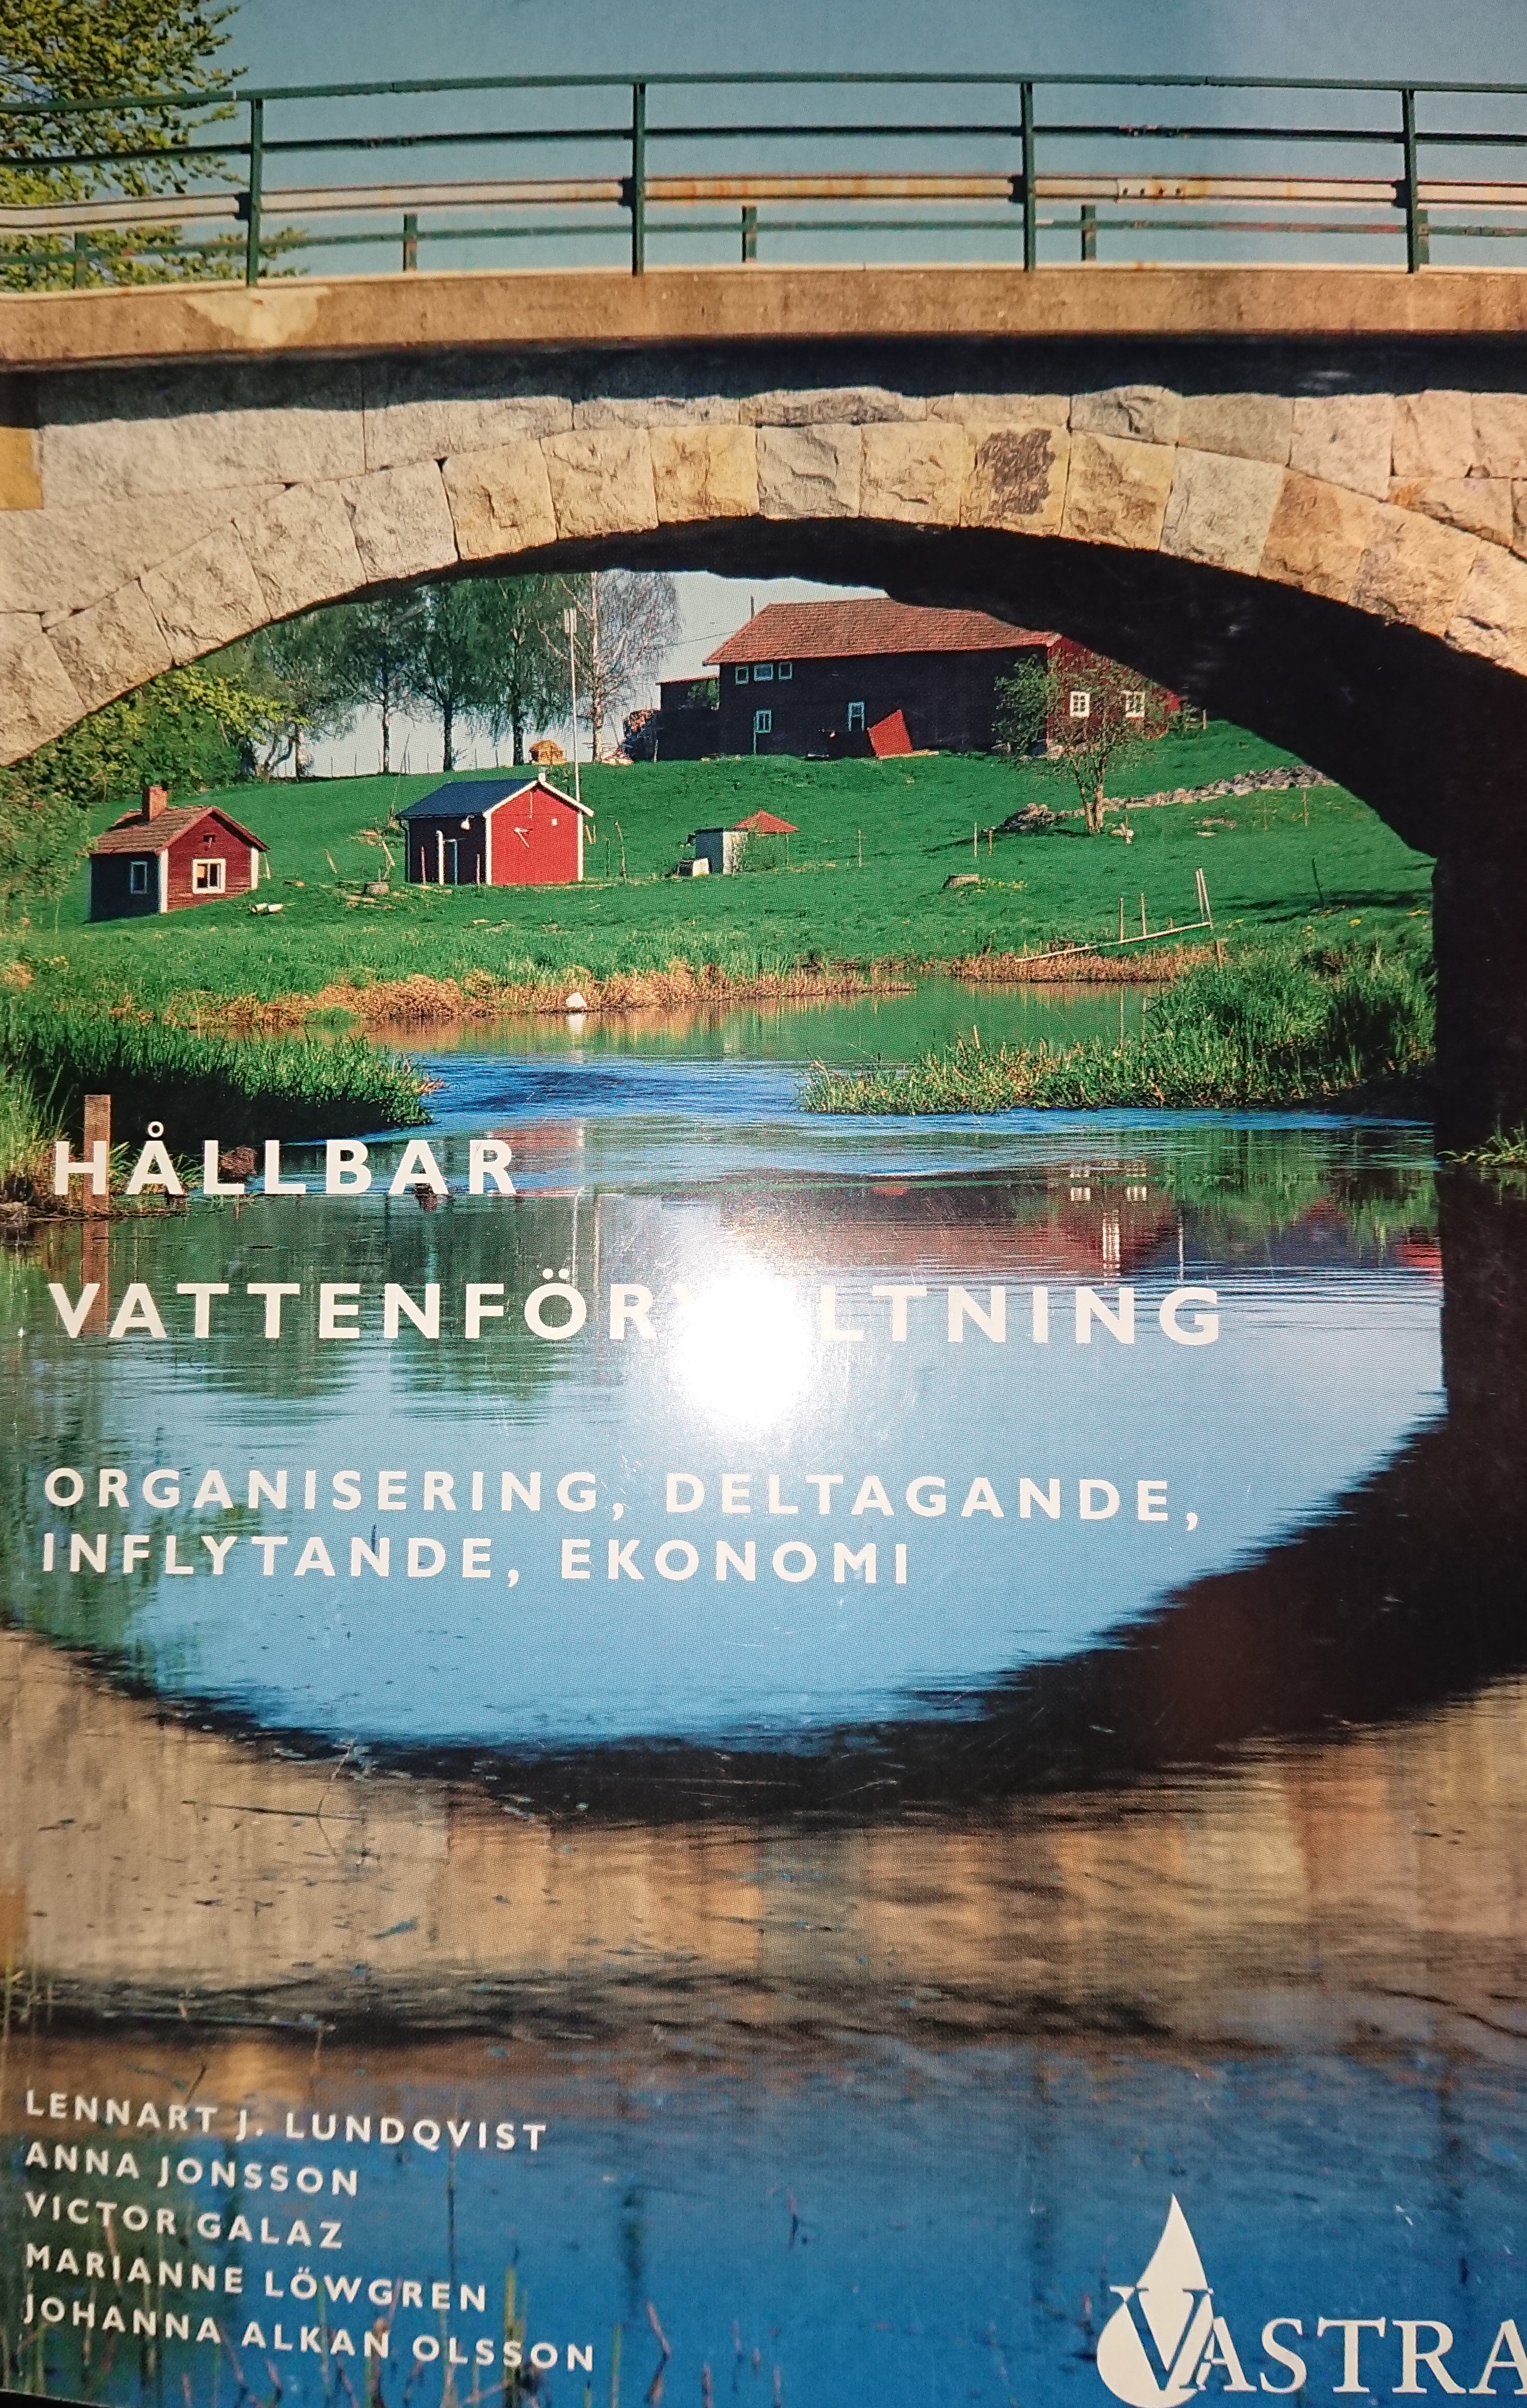 Hållbar vattenförvaltning - organisering, deltagande, inflytande, ekonomi; Lennart J. Lundqvist, Anna Jonsson, Victor Glaz, Marianne Löwengren, Johanna Allan Olsson; 2004